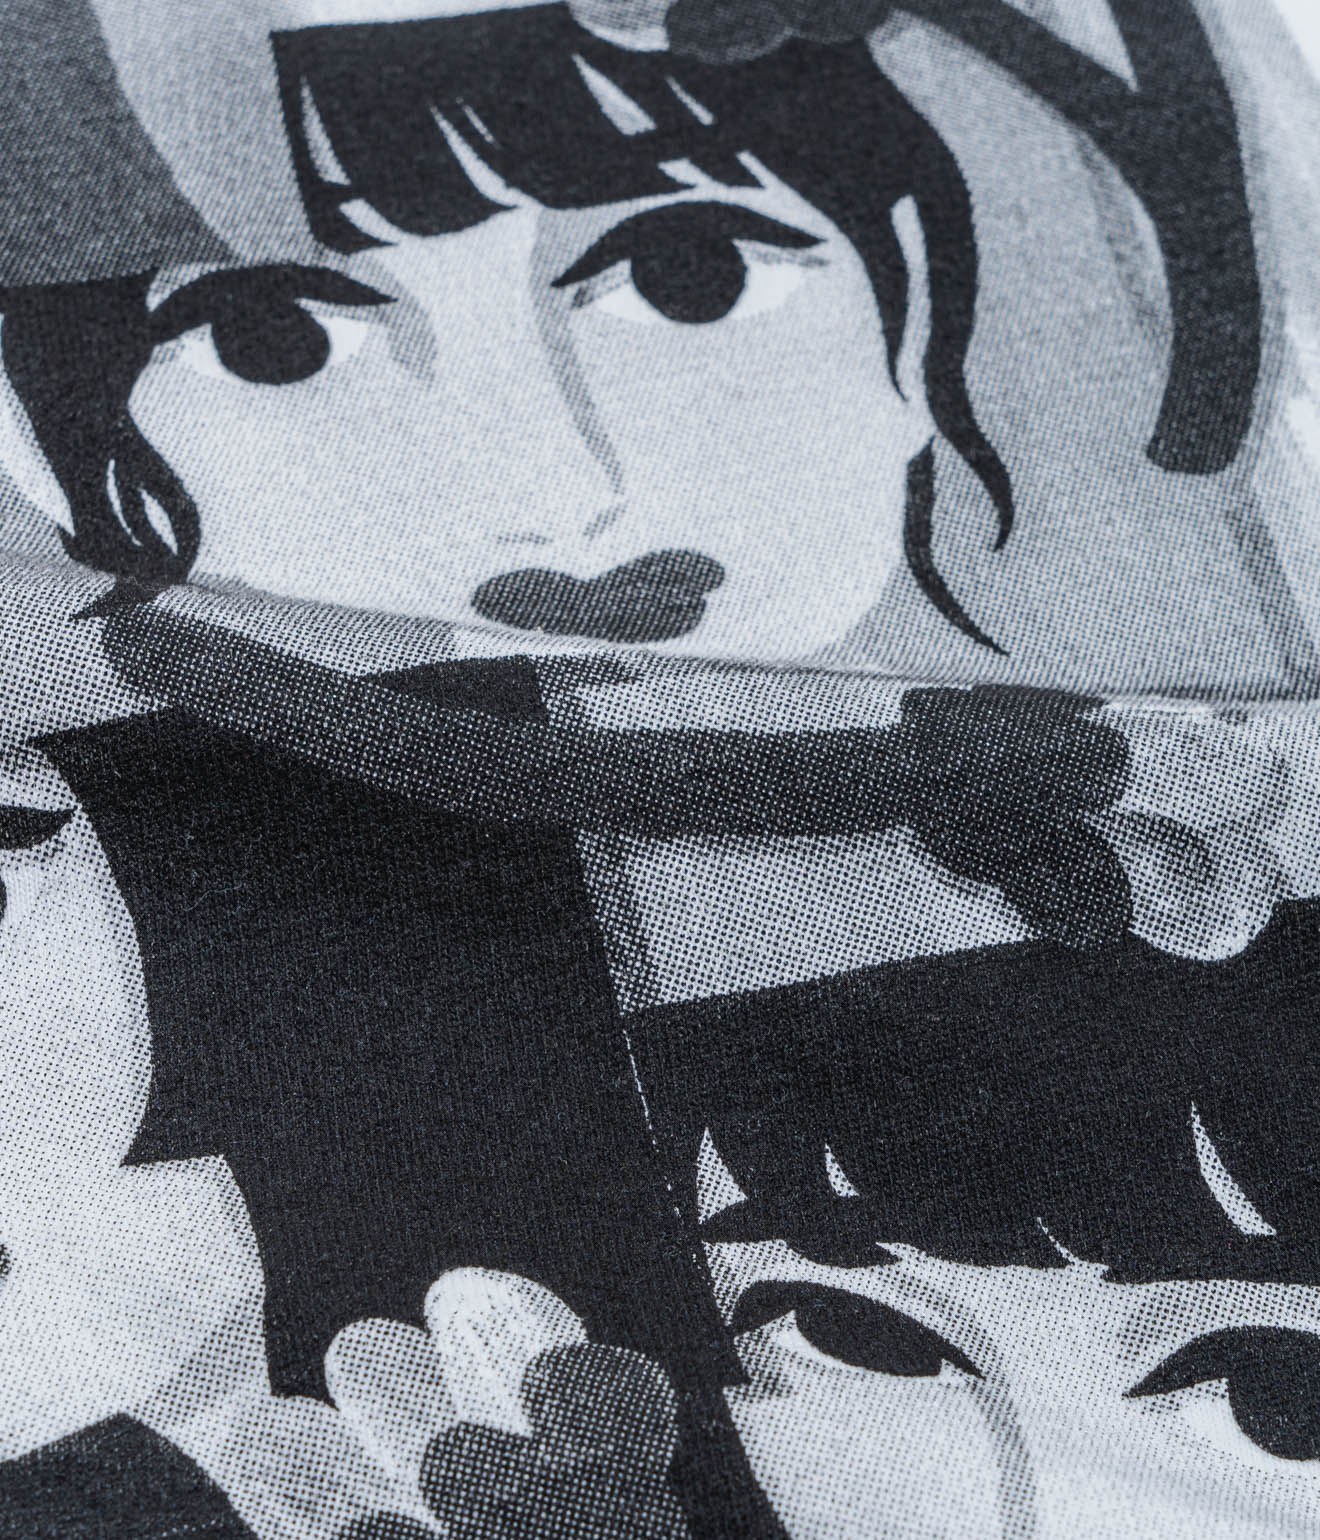 RAY × WEAREALLANIMALS × Momoko Nakamura "Bud" T-shirt black Print - WEAREALLANIMALS